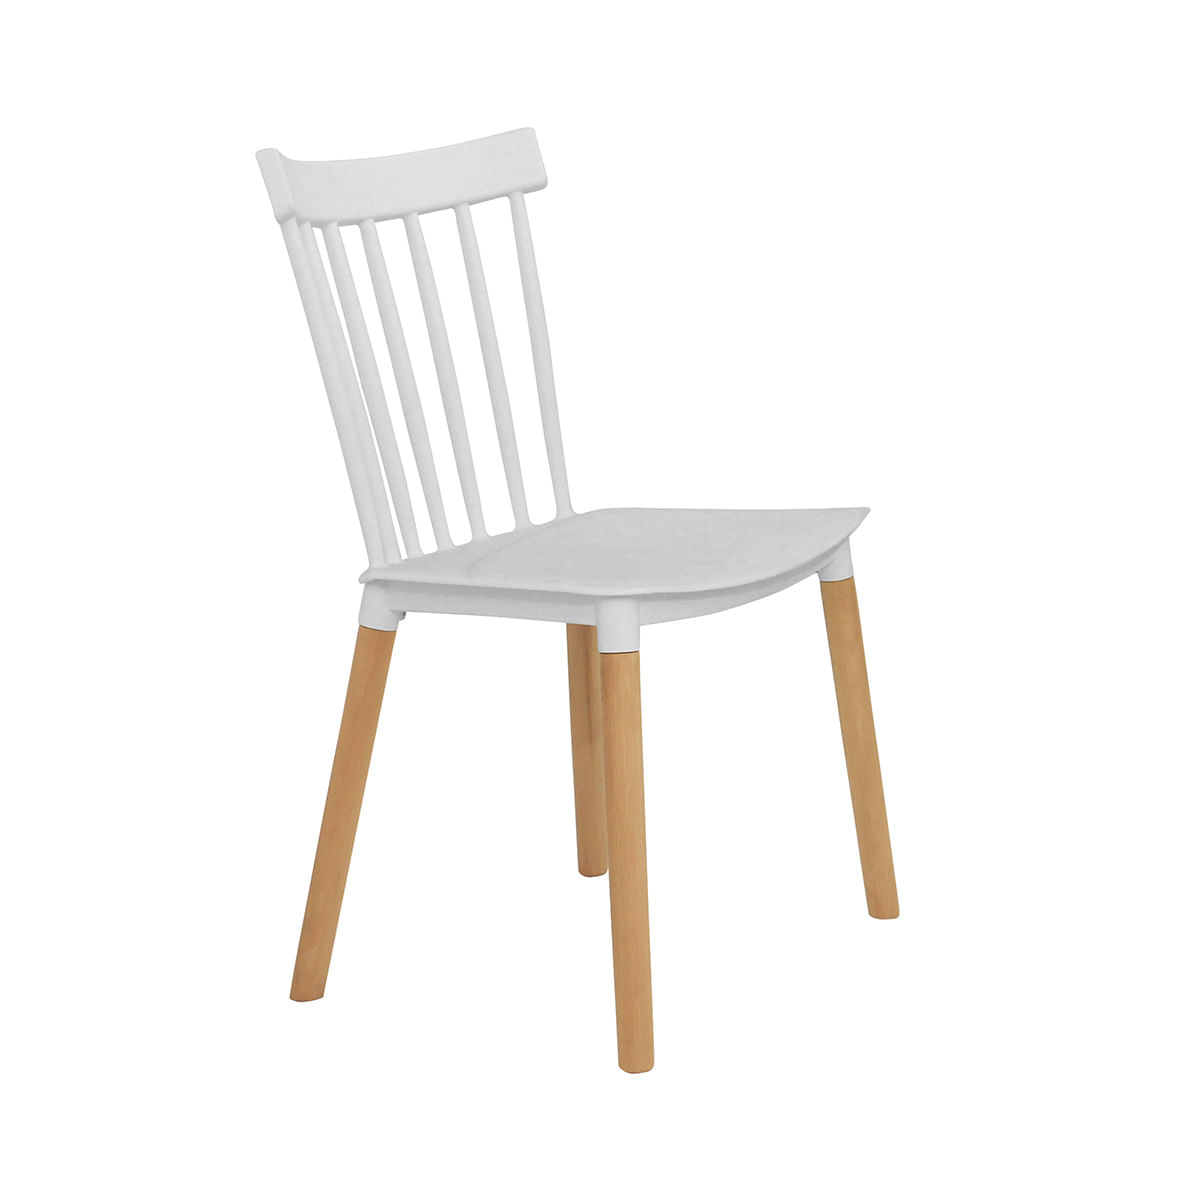 silla-windsor-madera